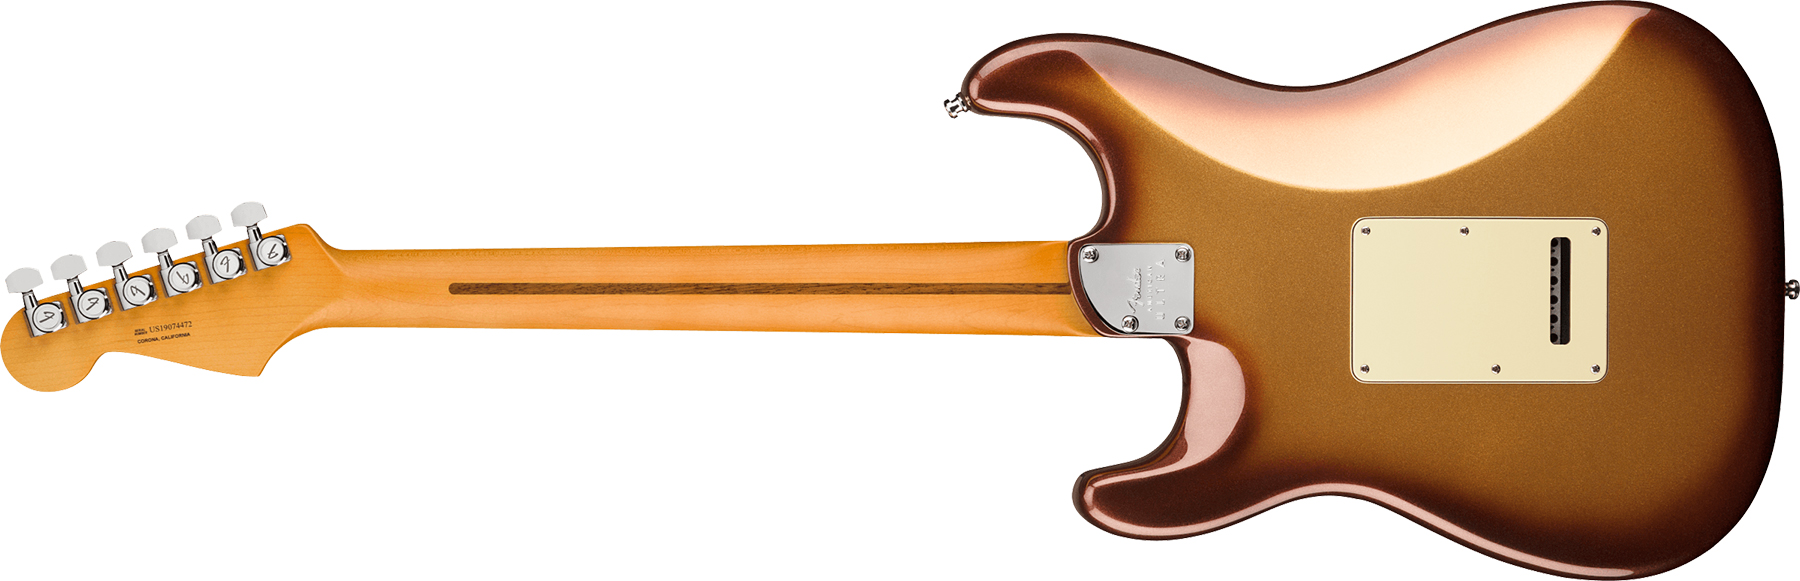 Fender Strat American Ultra 2019 Usa Mn - Mocha Burst - Guitarra eléctrica con forma de str. - Variation 2